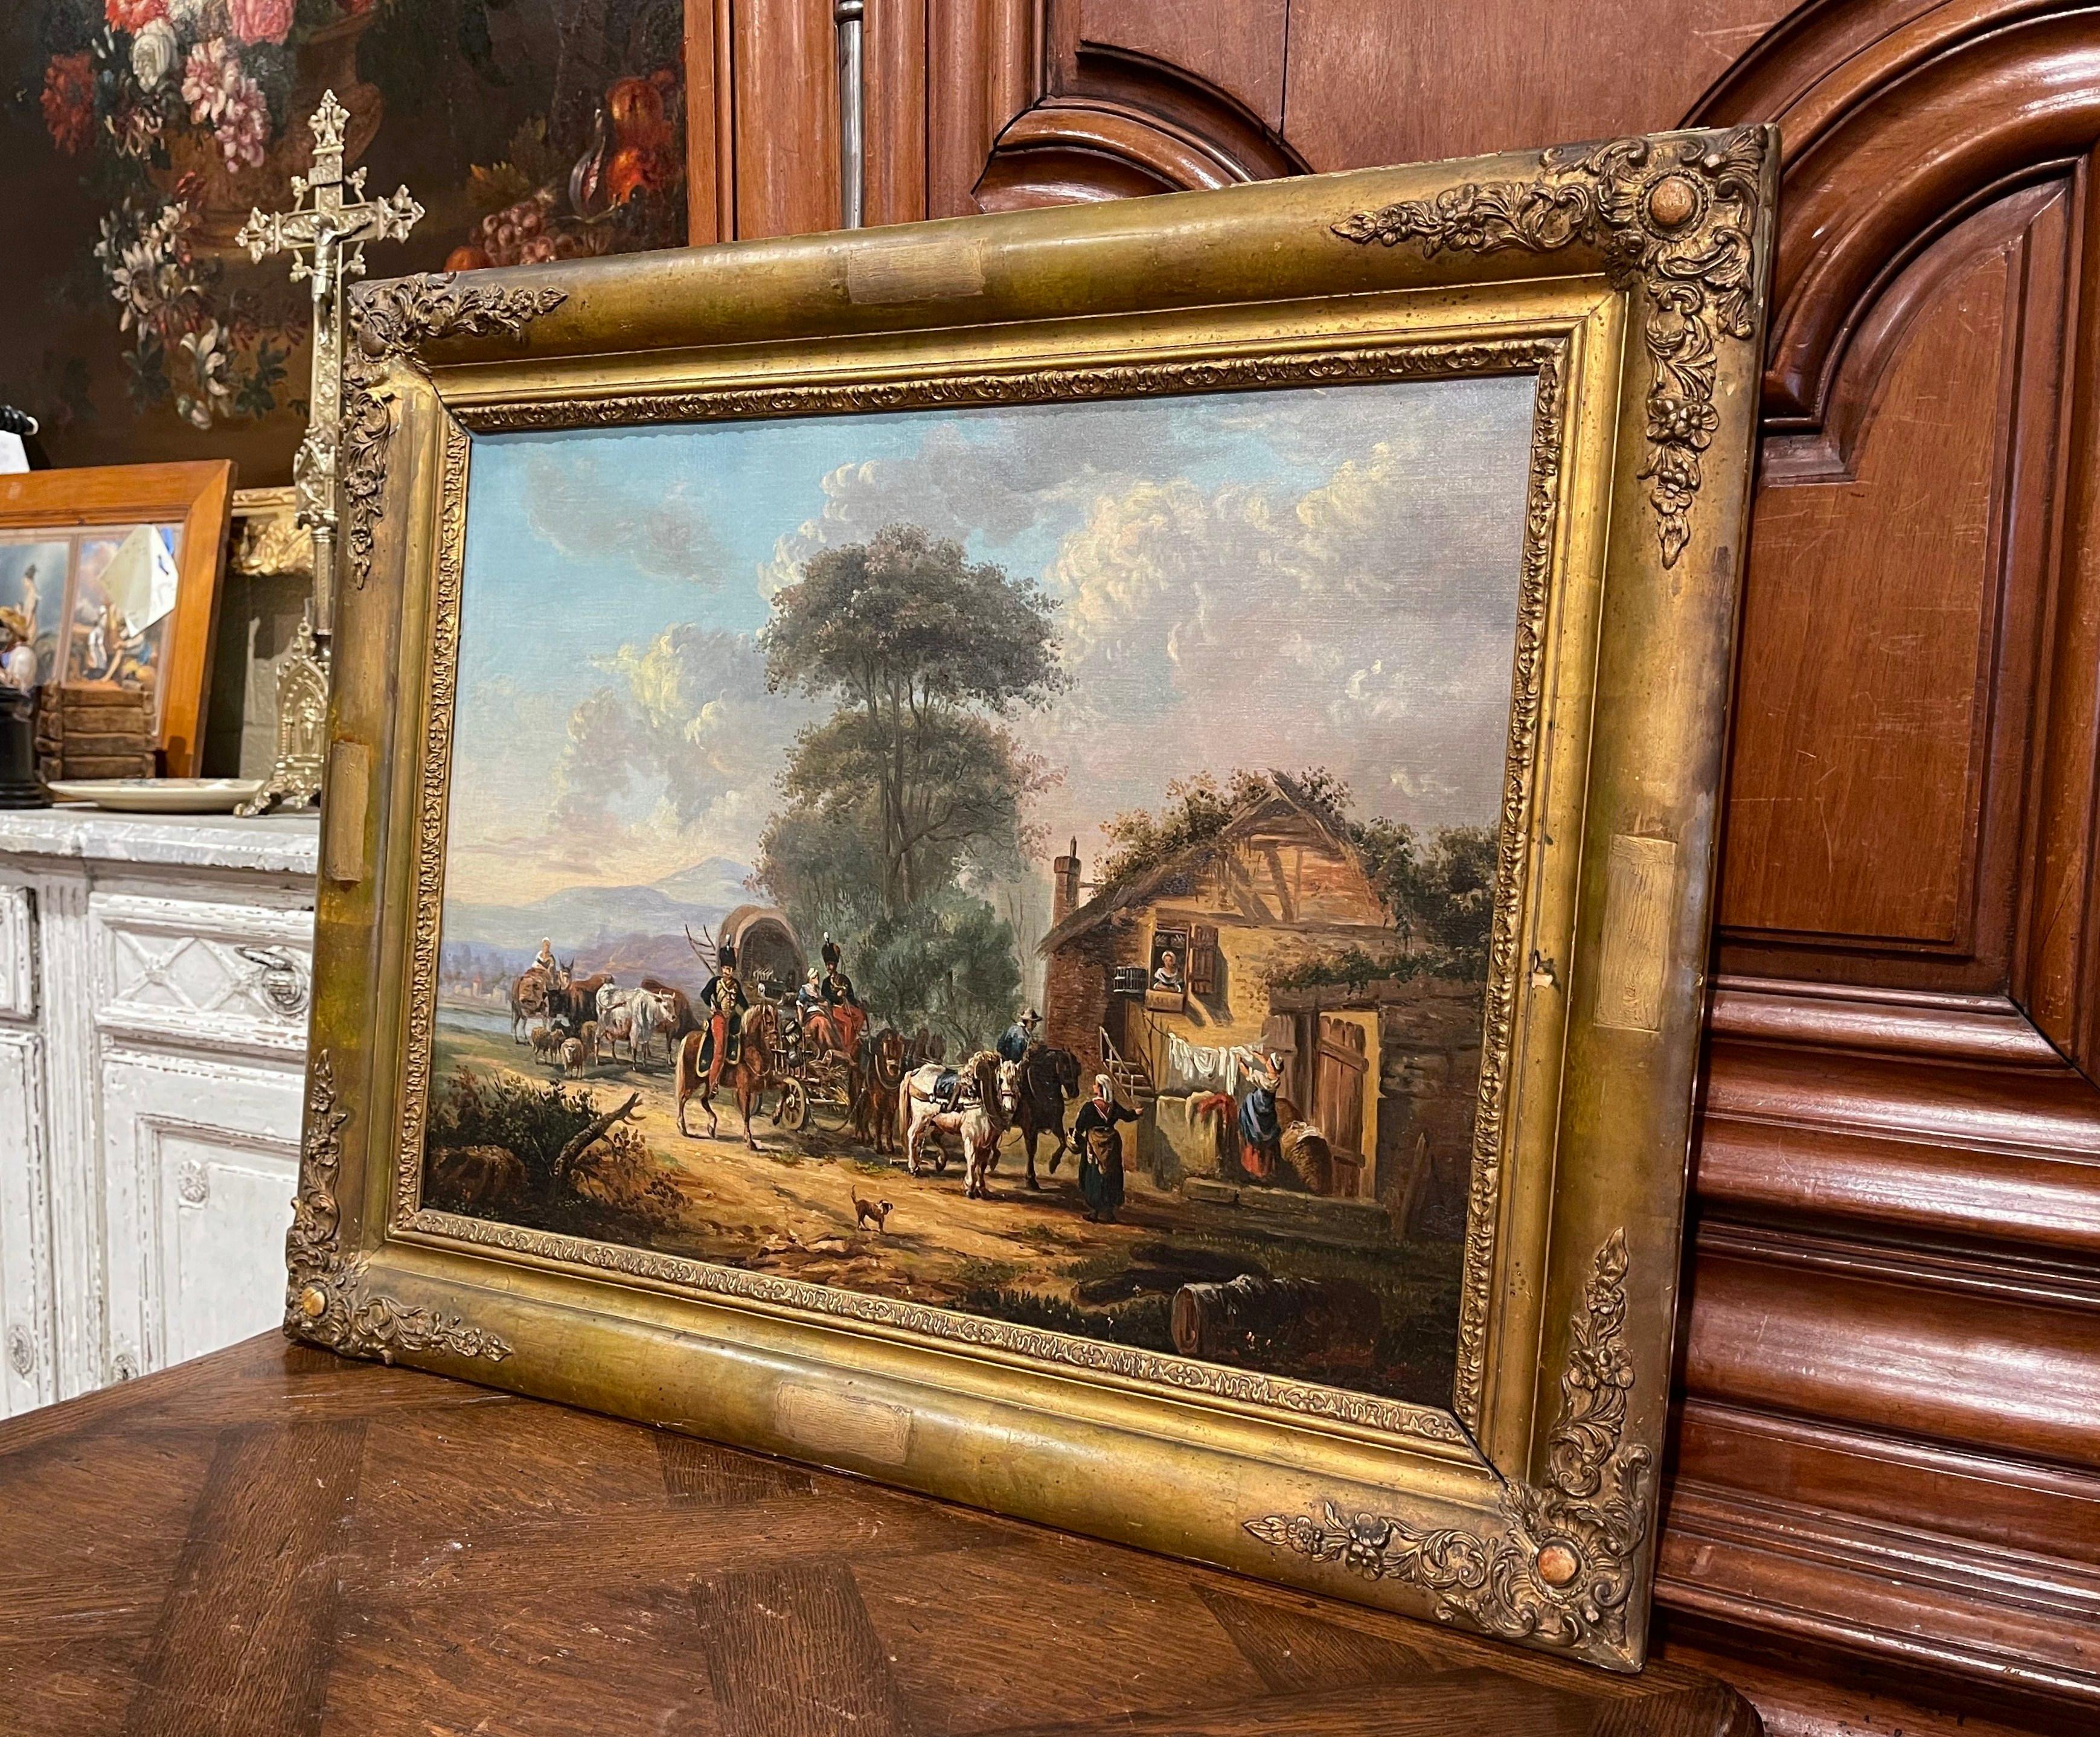 Das um 1860 in Frankreich gemalte Gemälde zeigt eine pastorale Szene mit Soldaten auf einer Pferdekutsche, die vor einem Bauernhaus anhält. Es ist in den originalen geschnitzten und vergoldeten Holzrahmen eingefasst. Die Soldaten tragen Uniformen